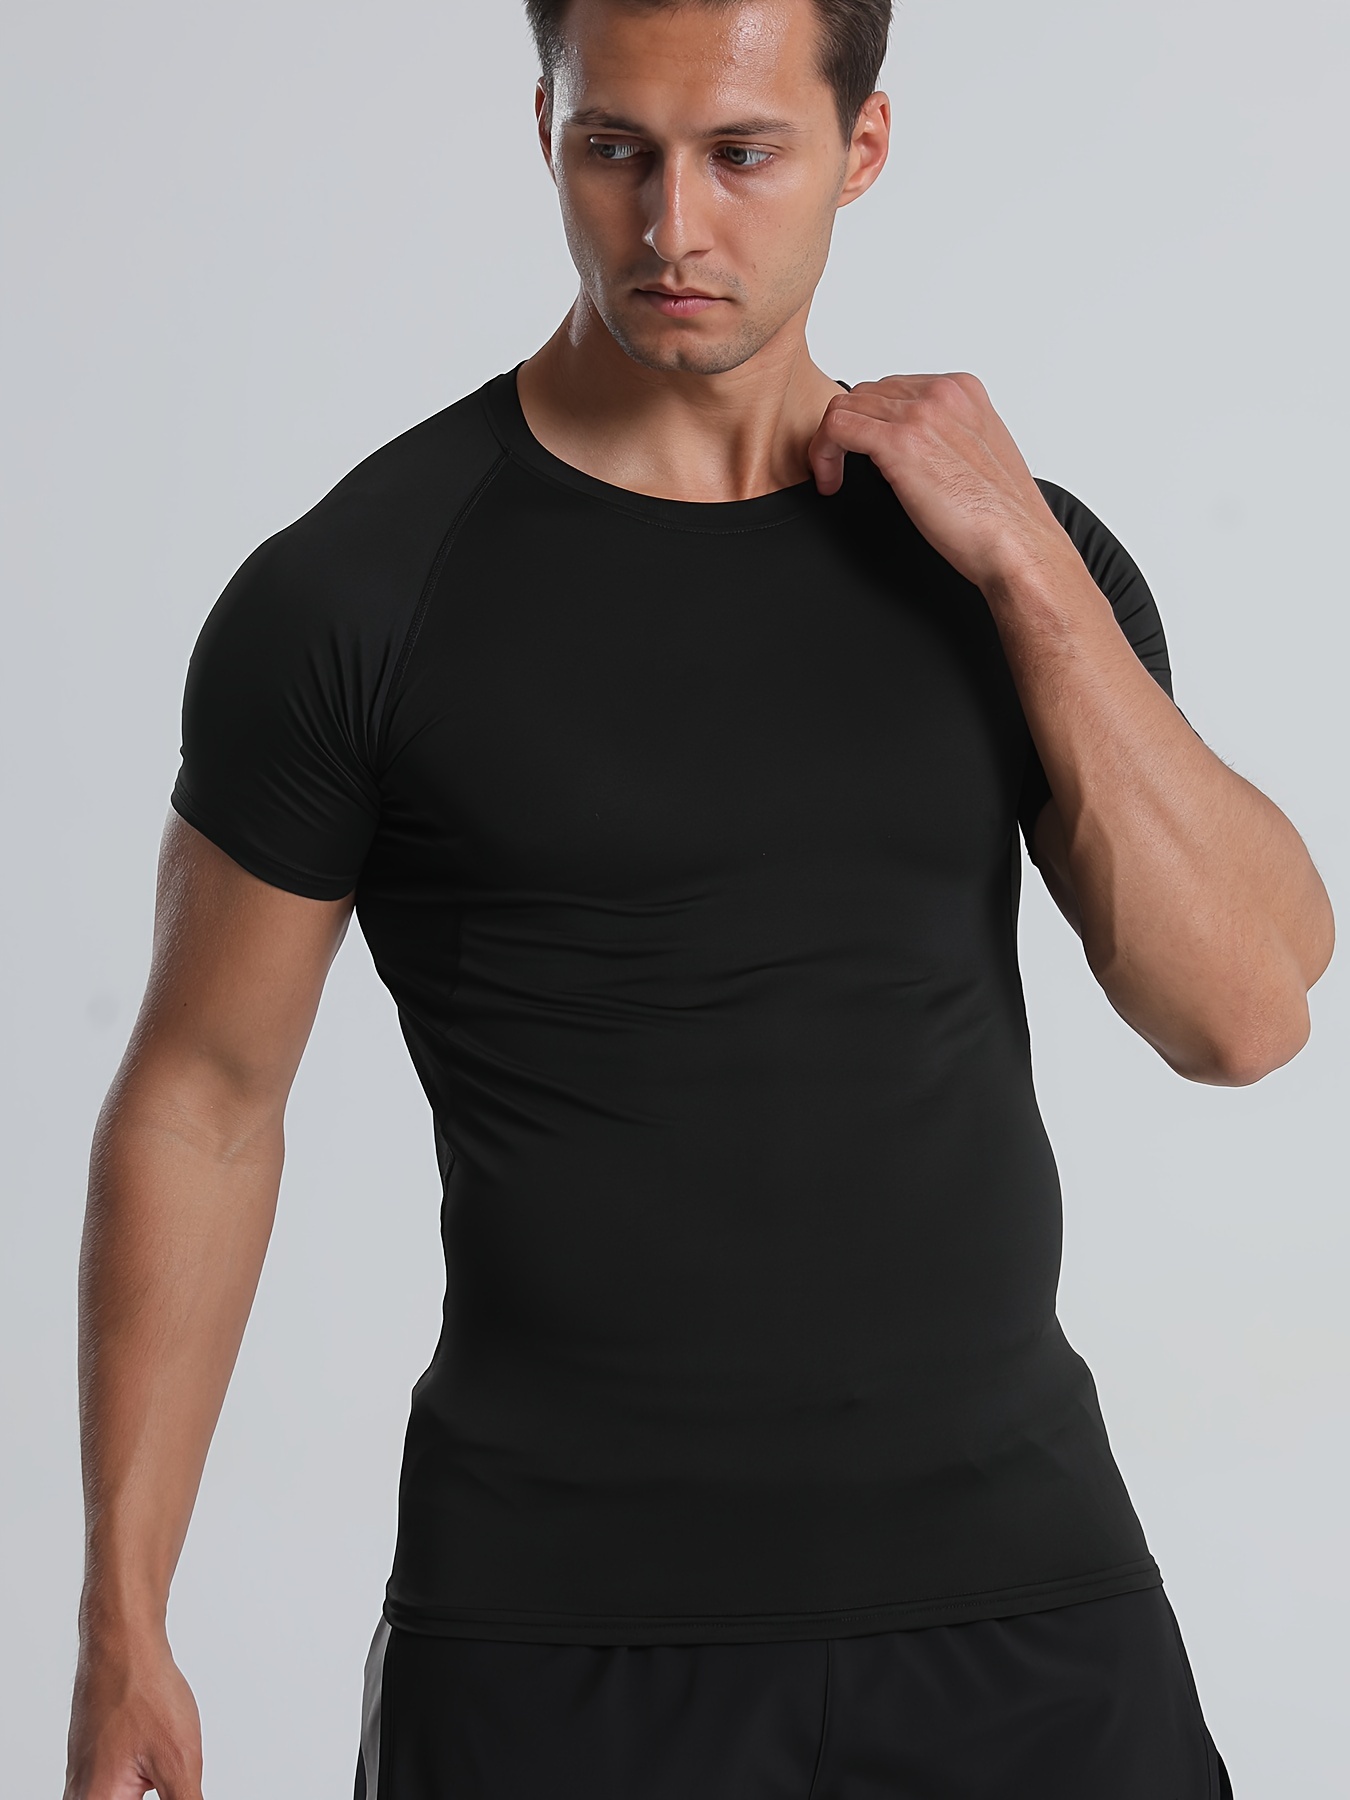 Camisetas negras de compresión para hombre, de manga corta